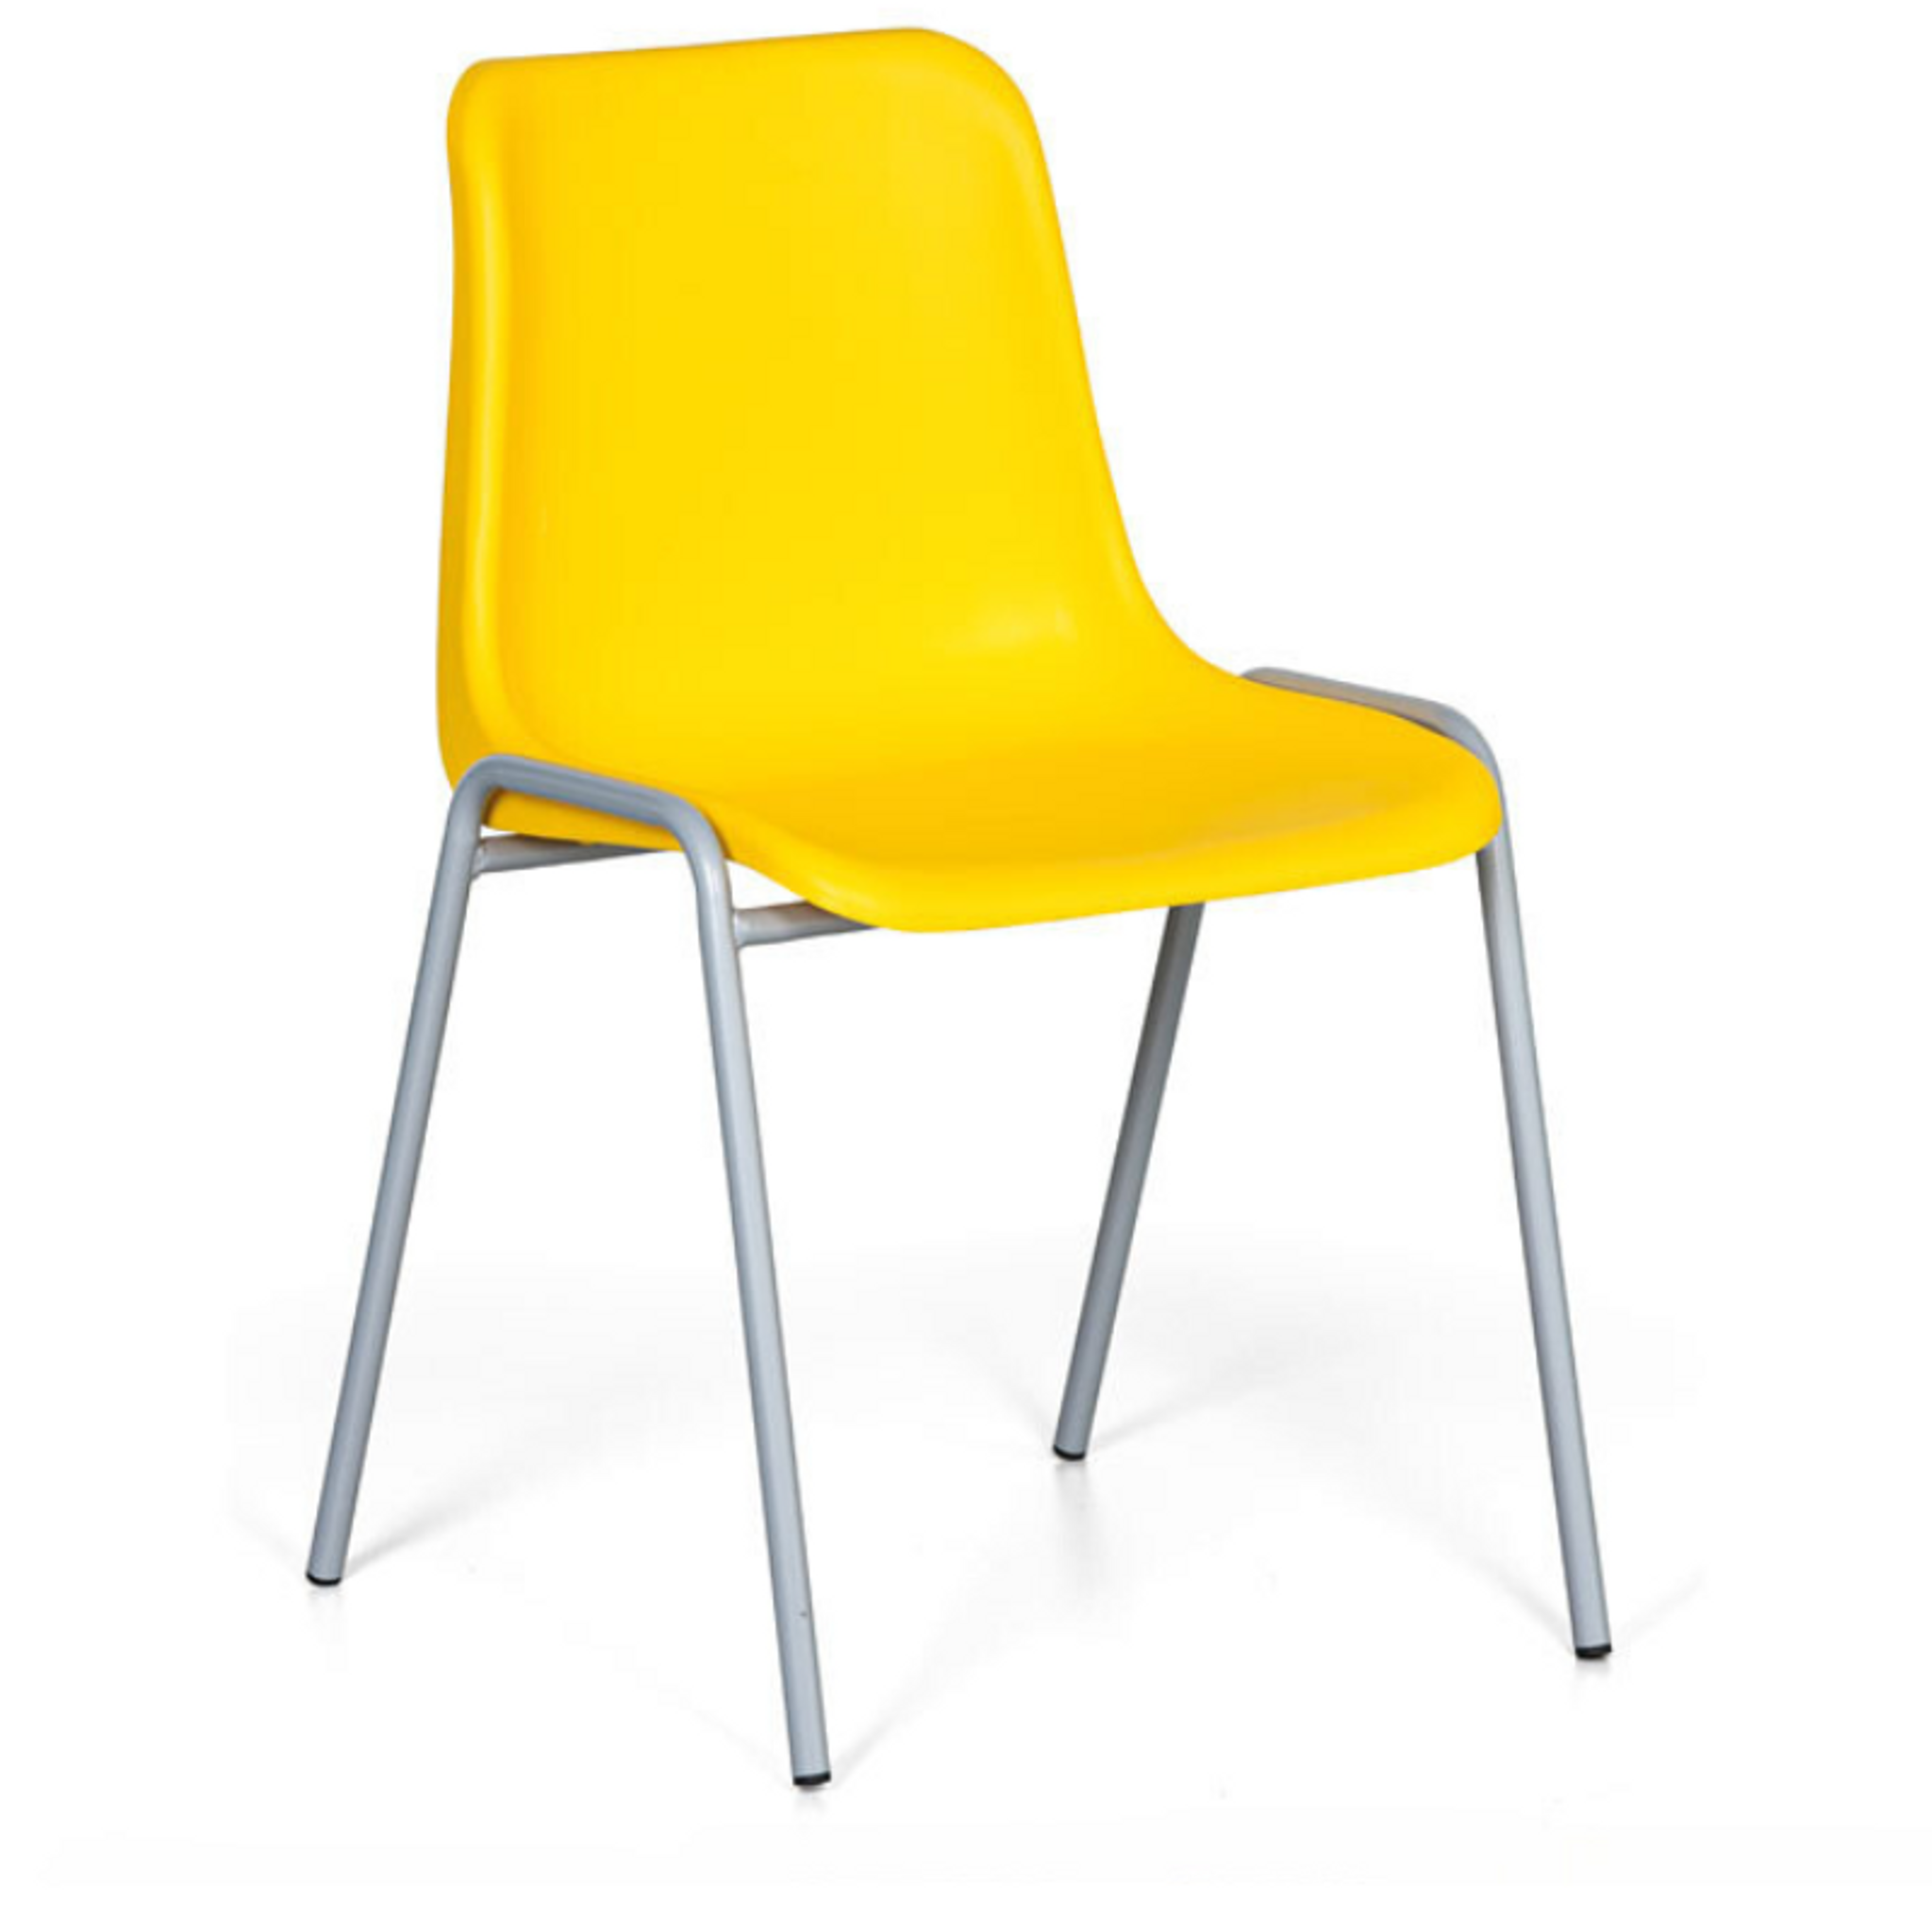 Plastová jedálenská stolička AMADOR, žltá